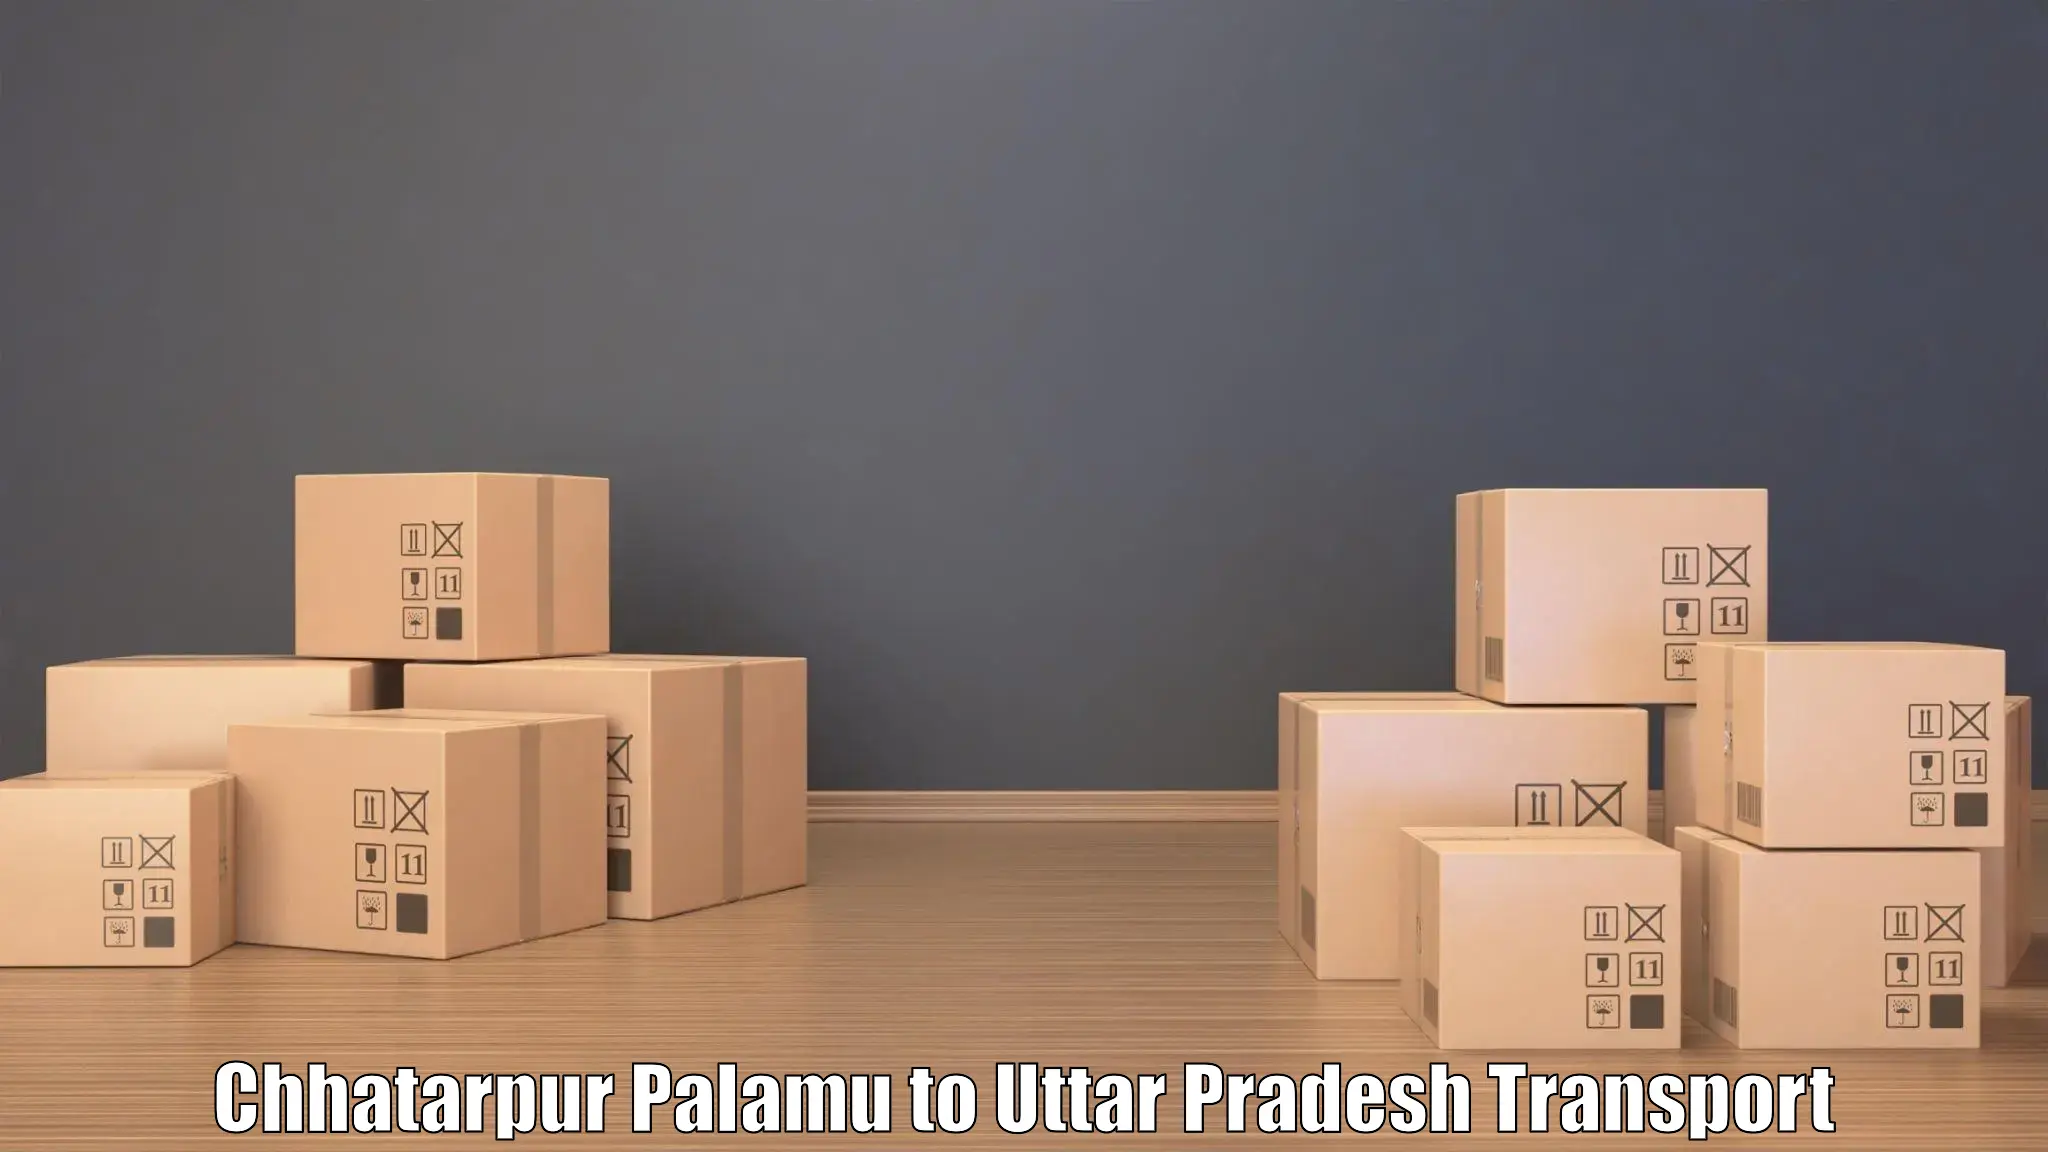 Pick up transport service Chhatarpur Palamu to Uttar Pradesh